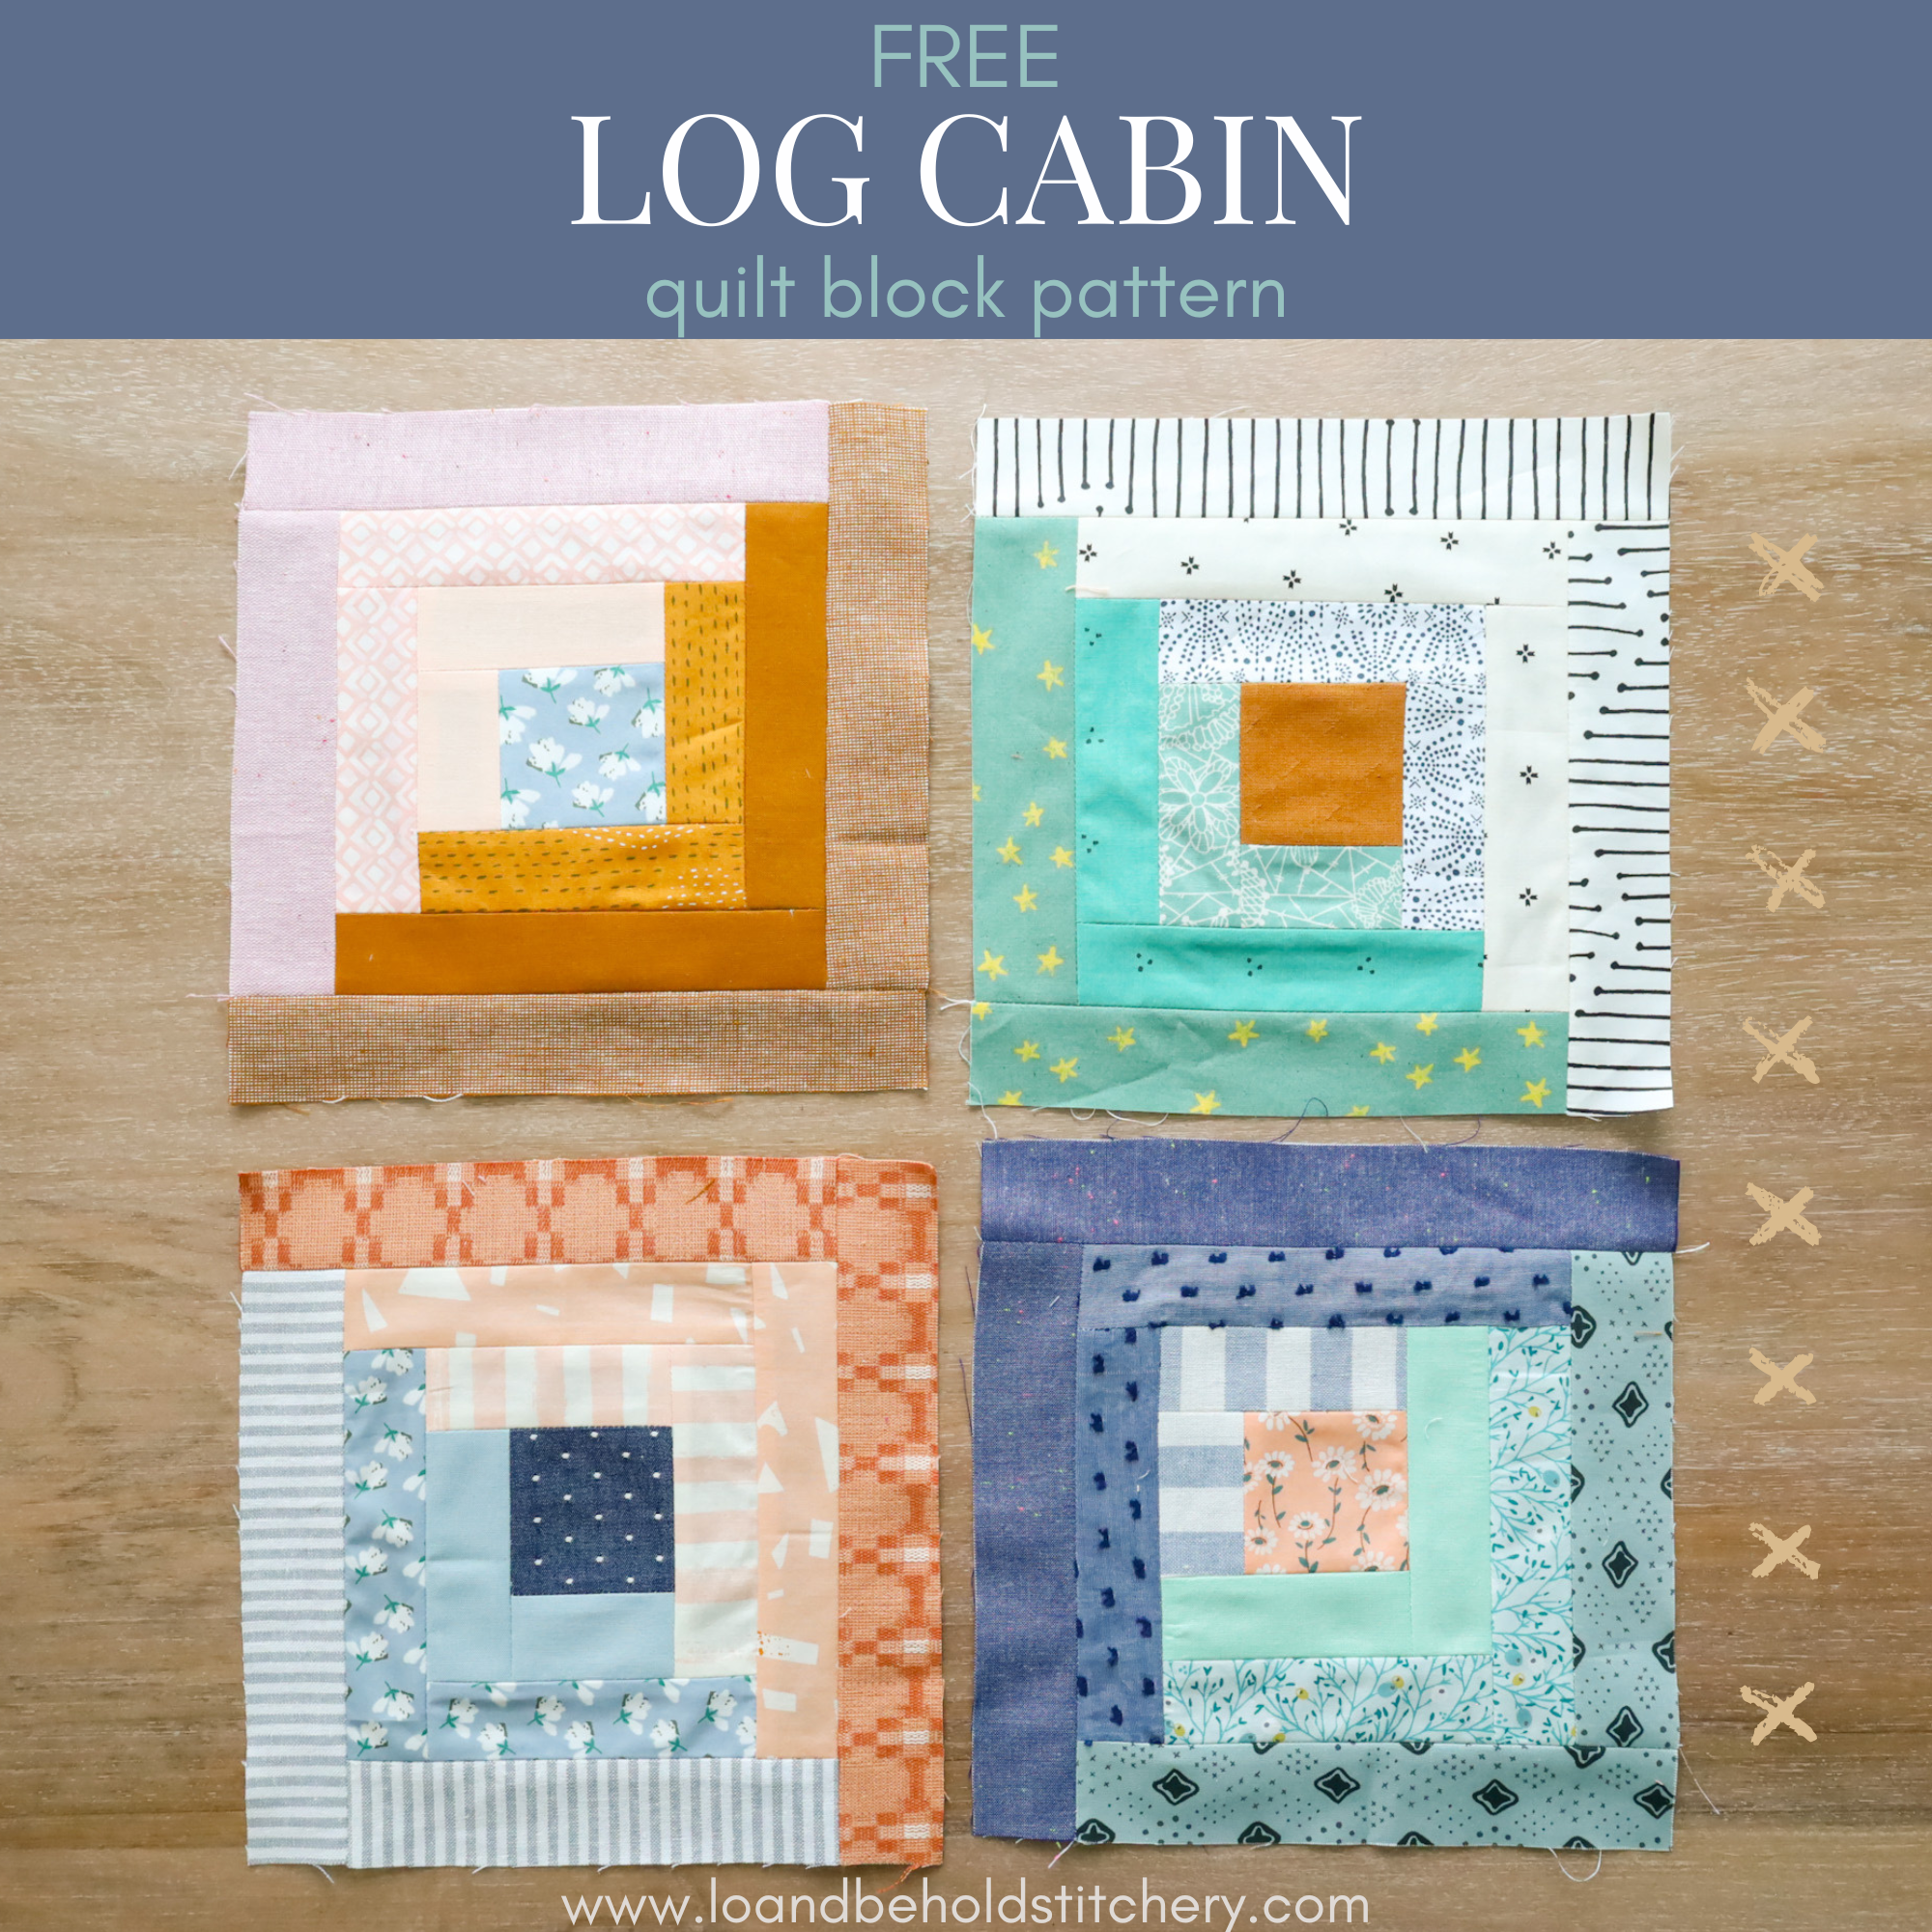 Free Log Cabin Quilt Block Pattern